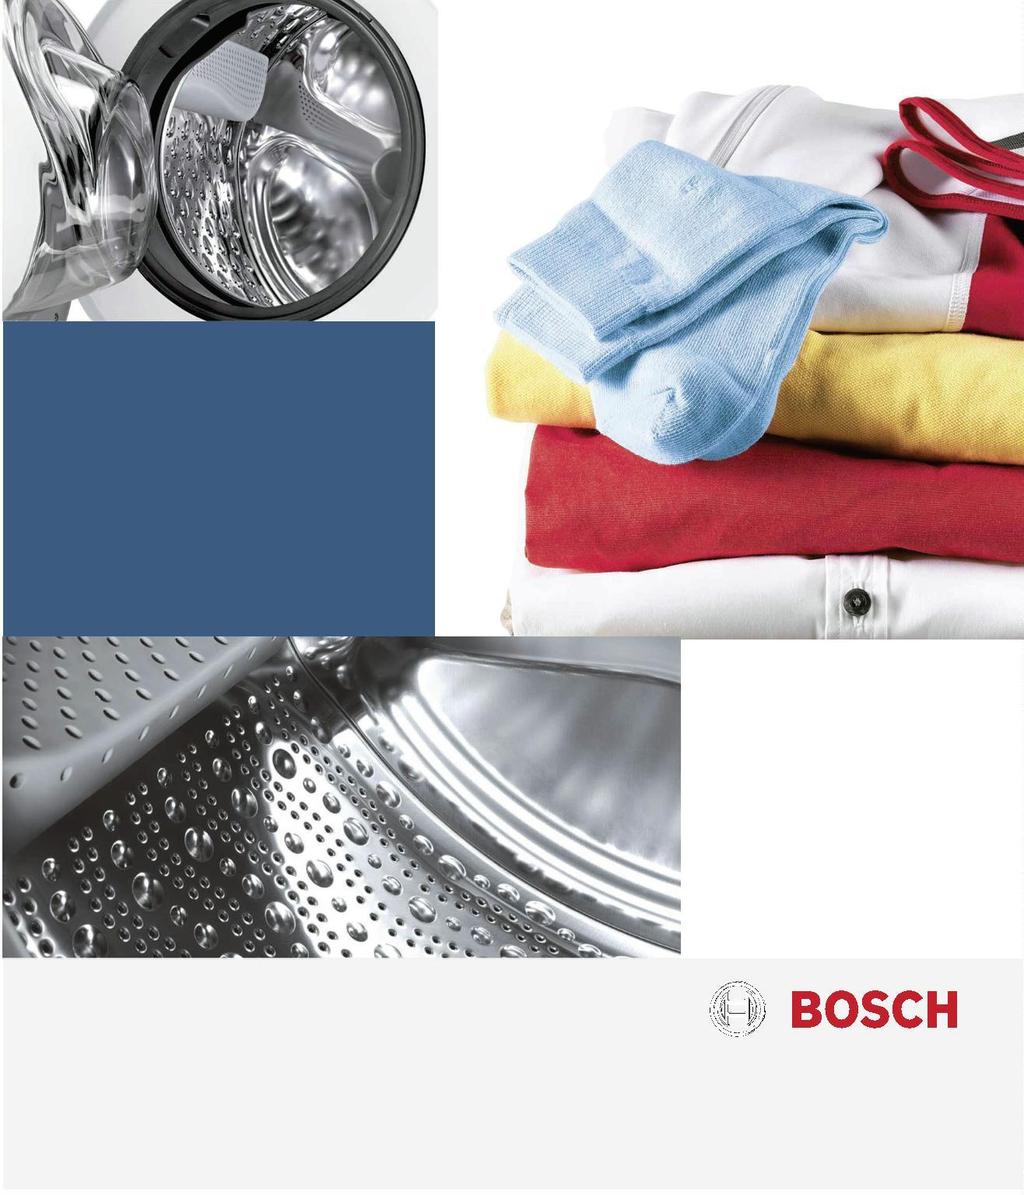 Reģistrējiet savu jauno Bosch ierīci tūlīt: www.bosch-home.